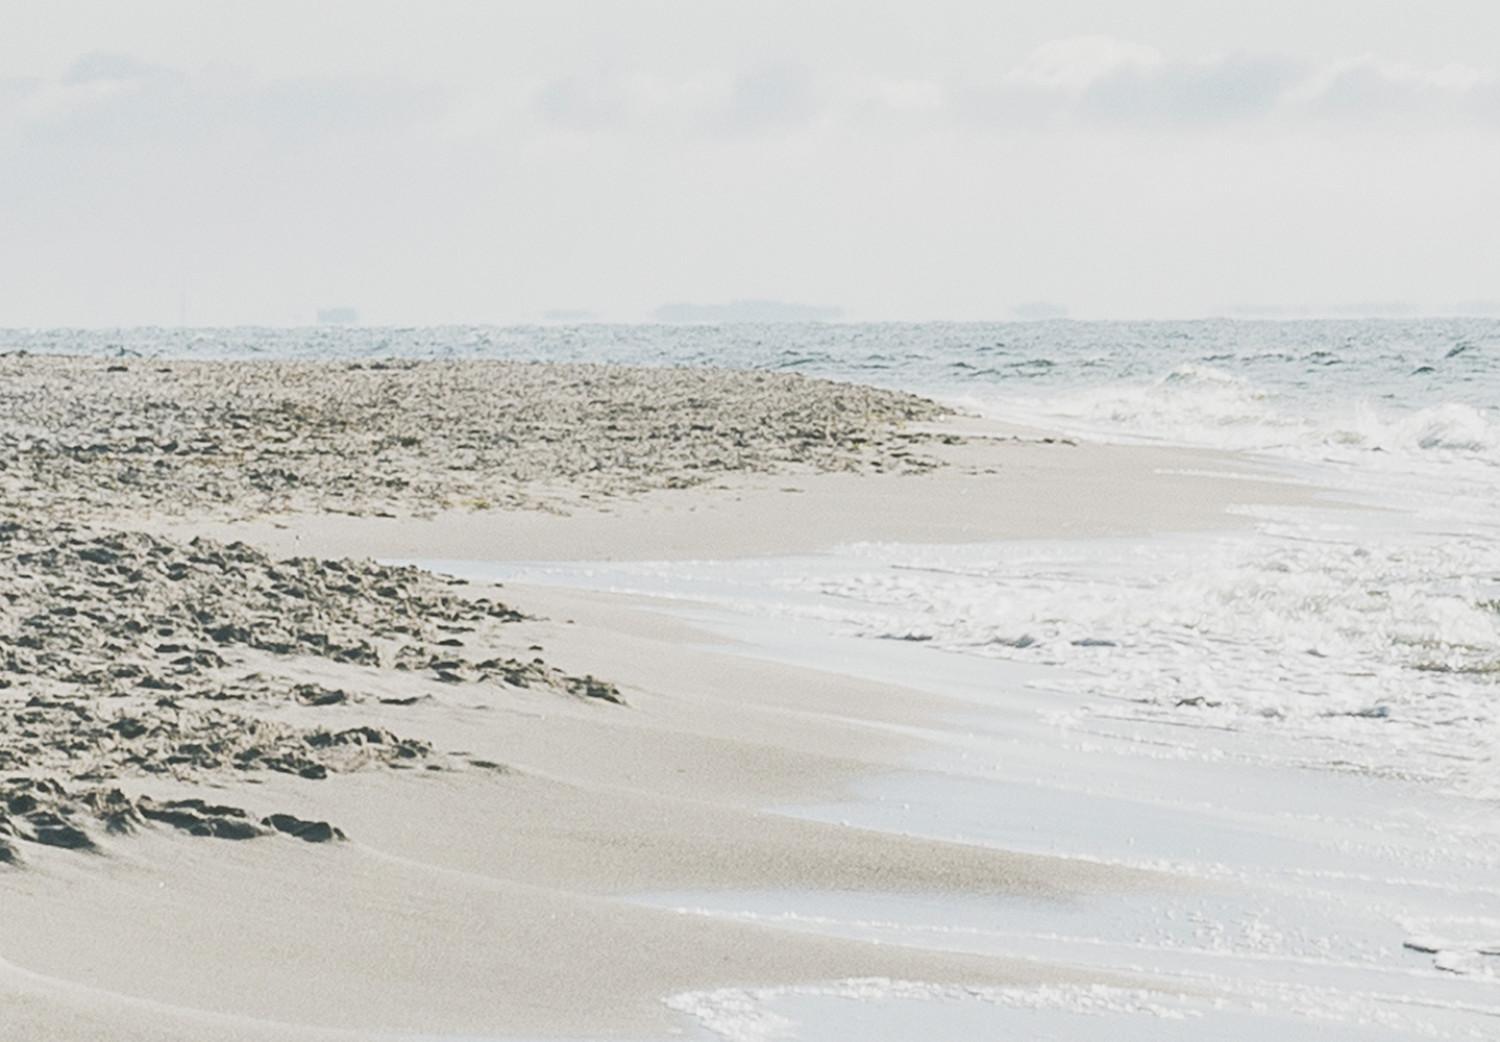 Cartel Costa tranquila: paisaje romántico de playa tranquila y olas en el mar